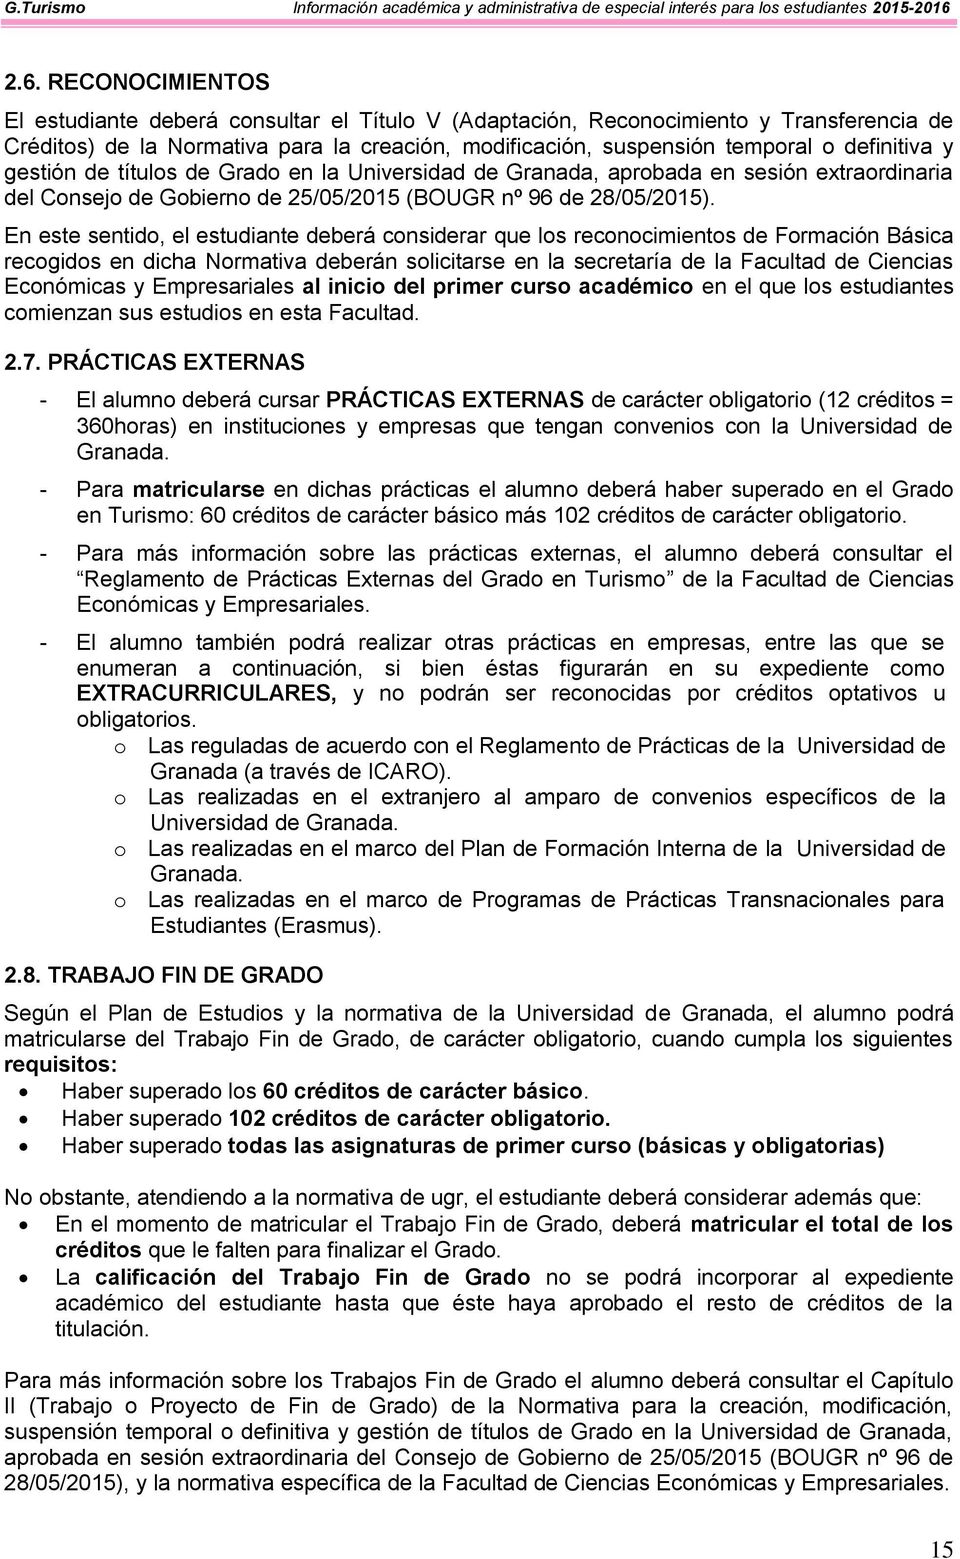 definitiva y gestión de títulos de Grado en la Universidad de Granada, aprobada en sesión extraordinaria del Consejo de Gobierno de 25/05/2015 (OUGR nº 96 de 28/05/2015).